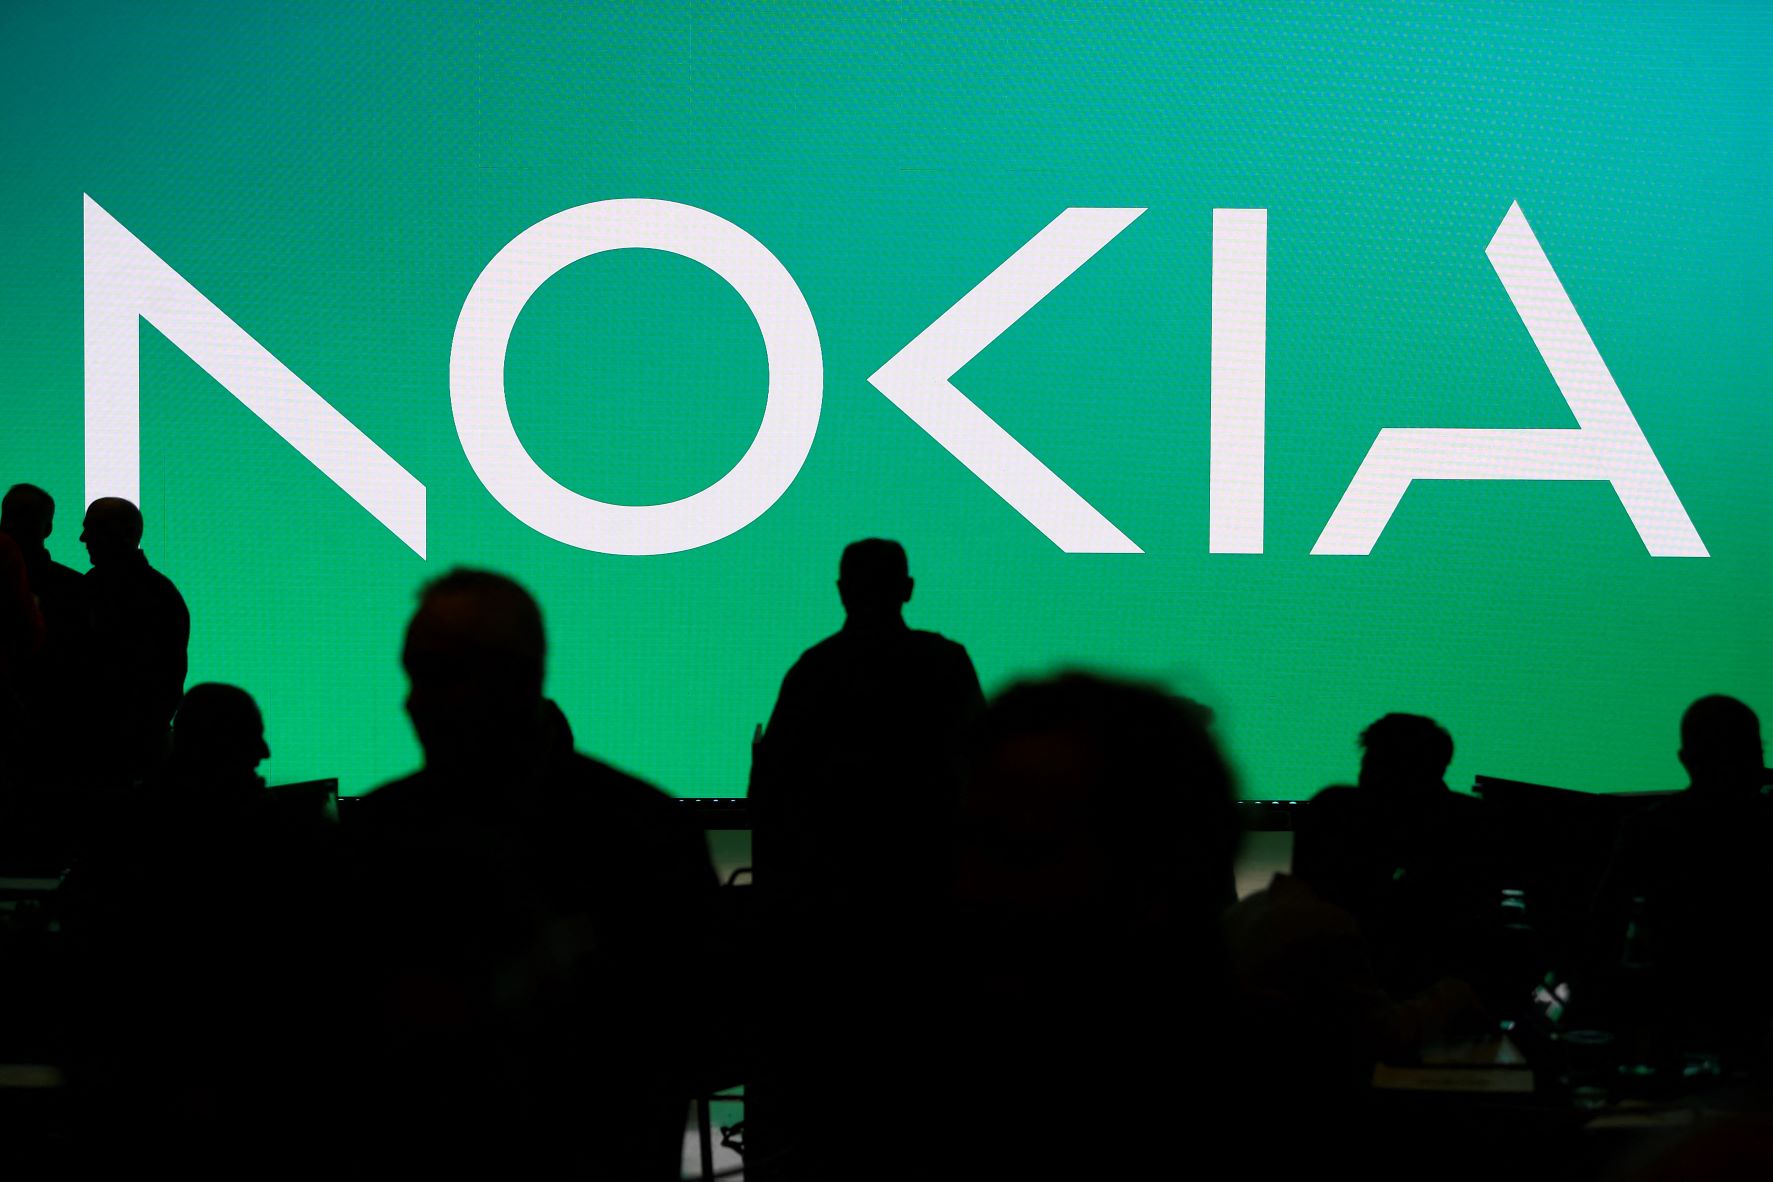 A Nokia új logója